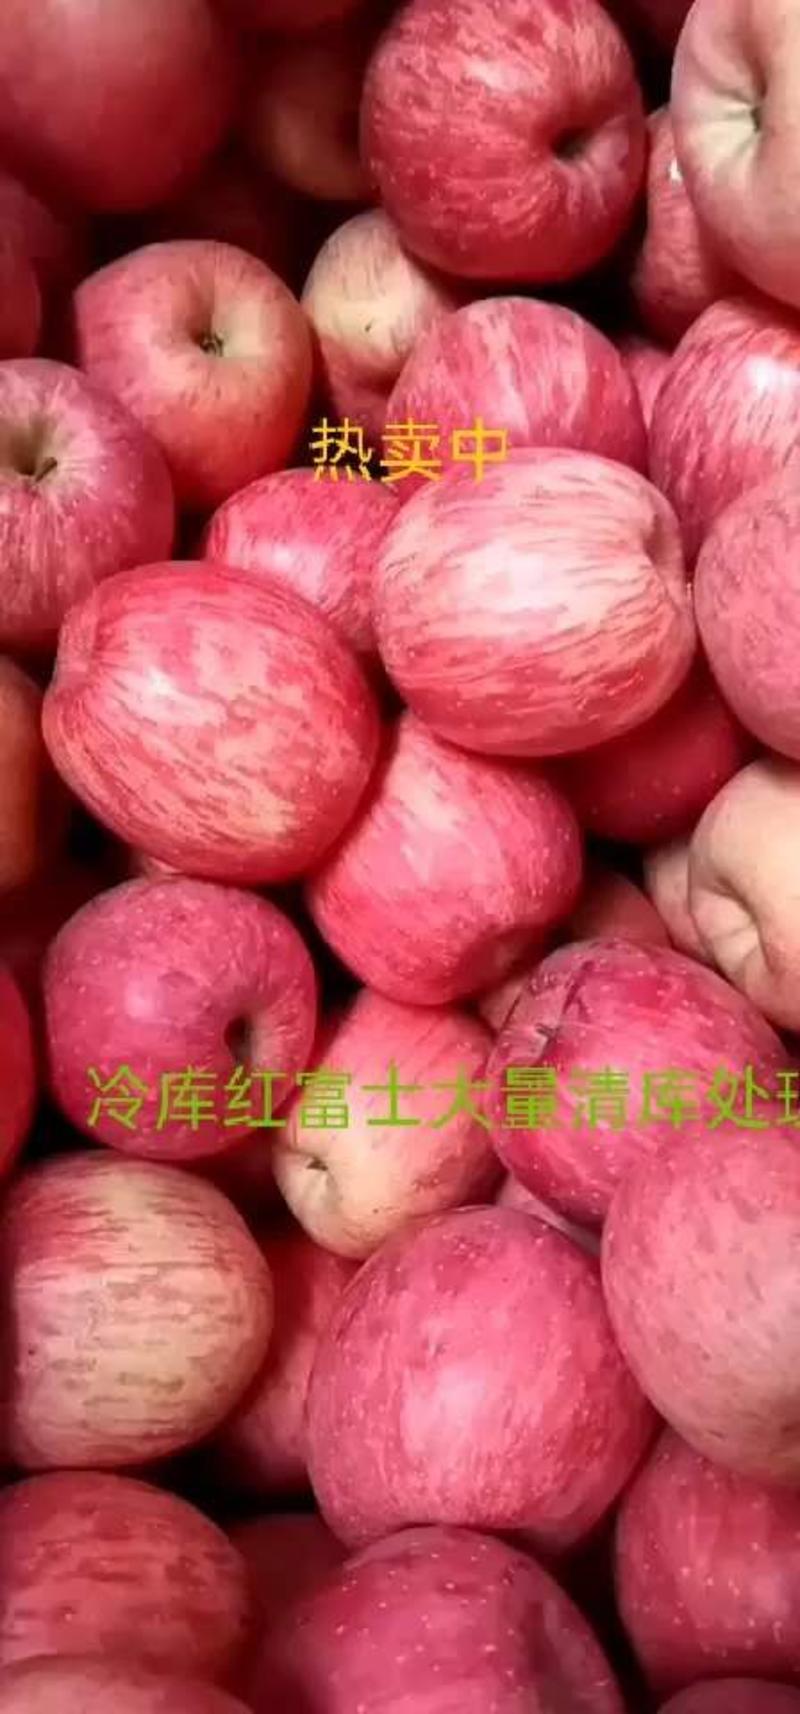 红富士苹果山东苹果-甜美中国-承接各大商超电商平台